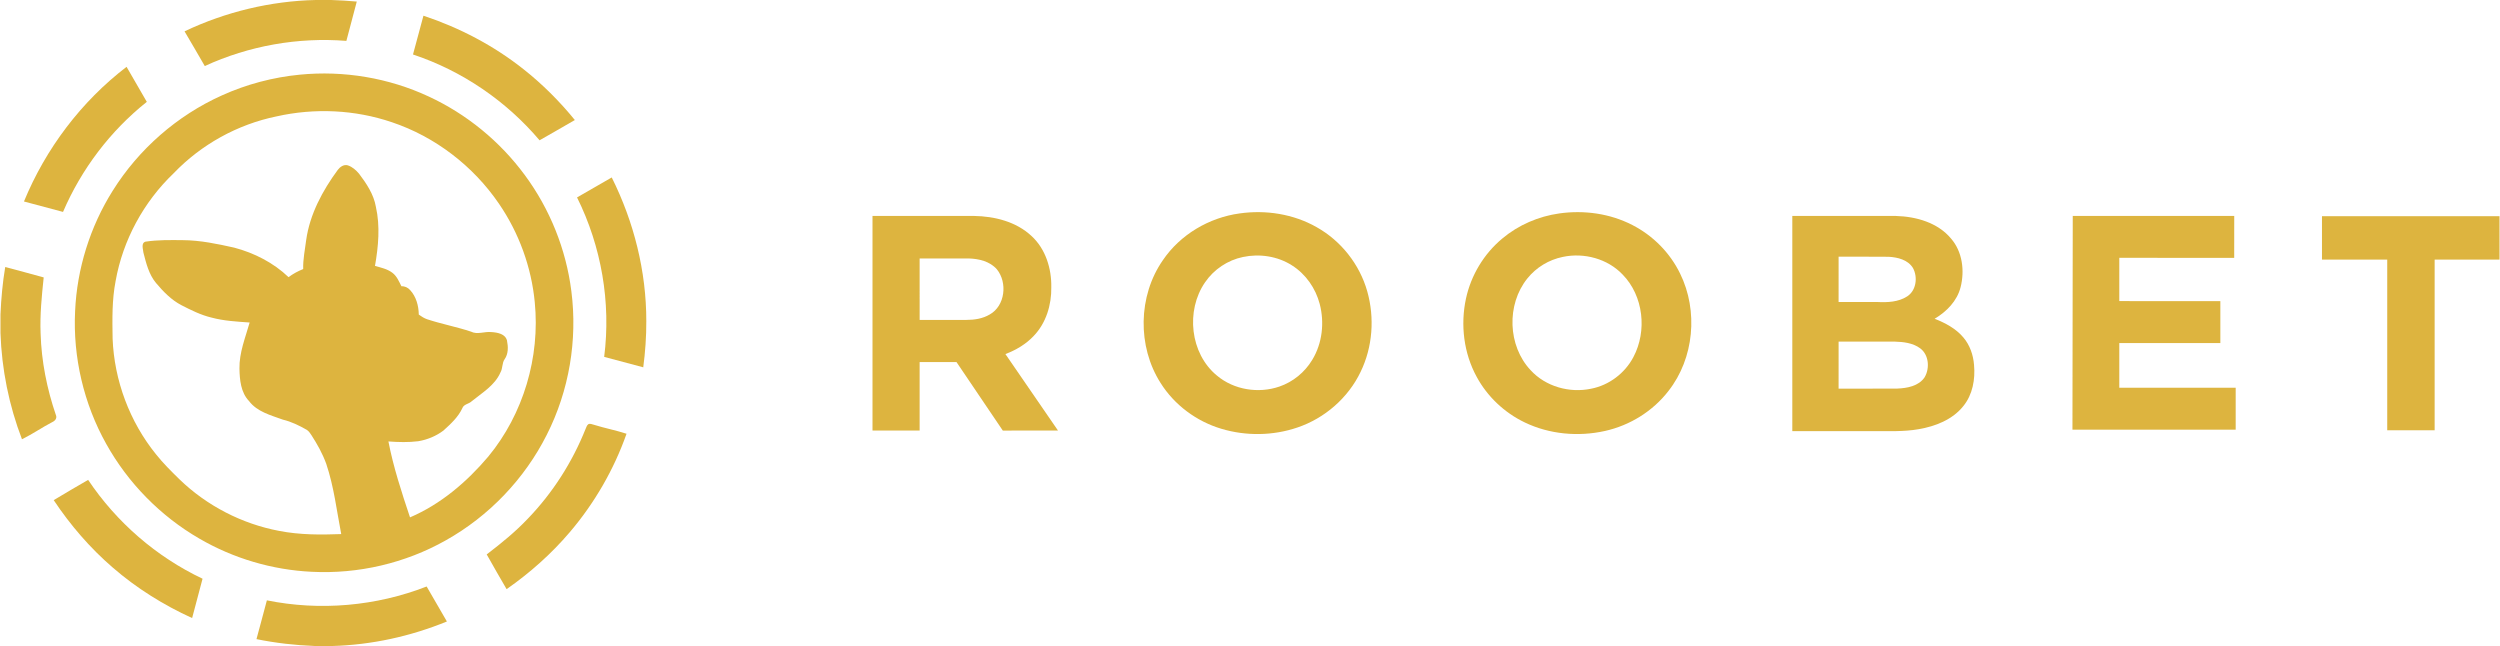 Roowards: Roobet’s Rakeback Bonus Program